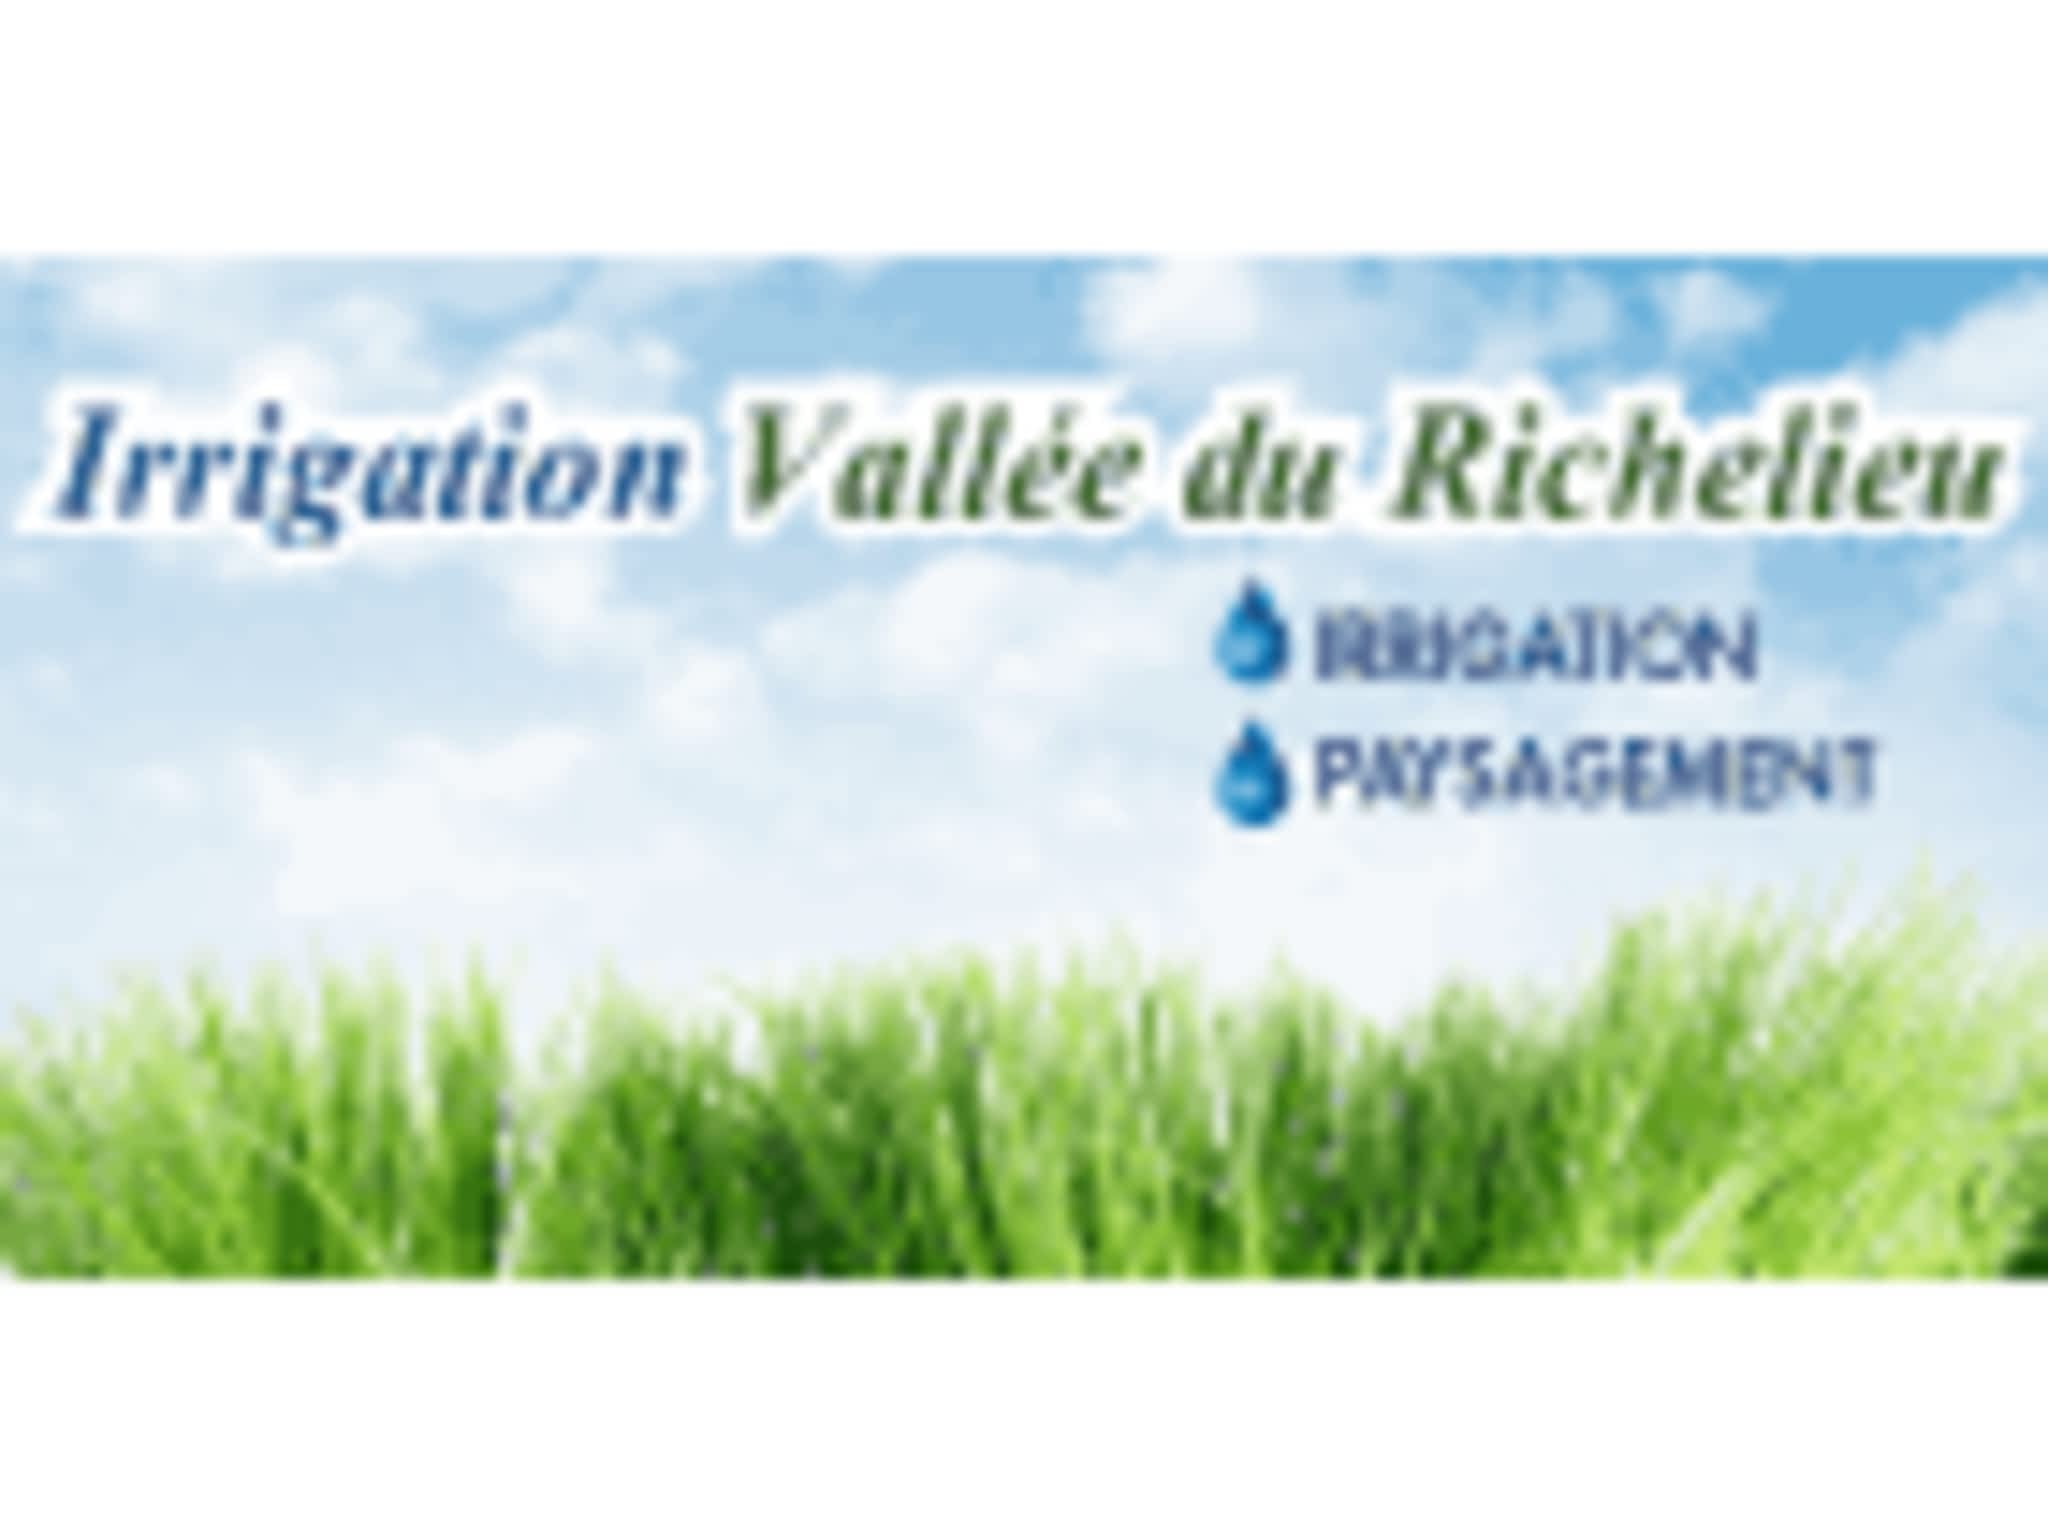 photo Irrigation Vallée du Richelieu